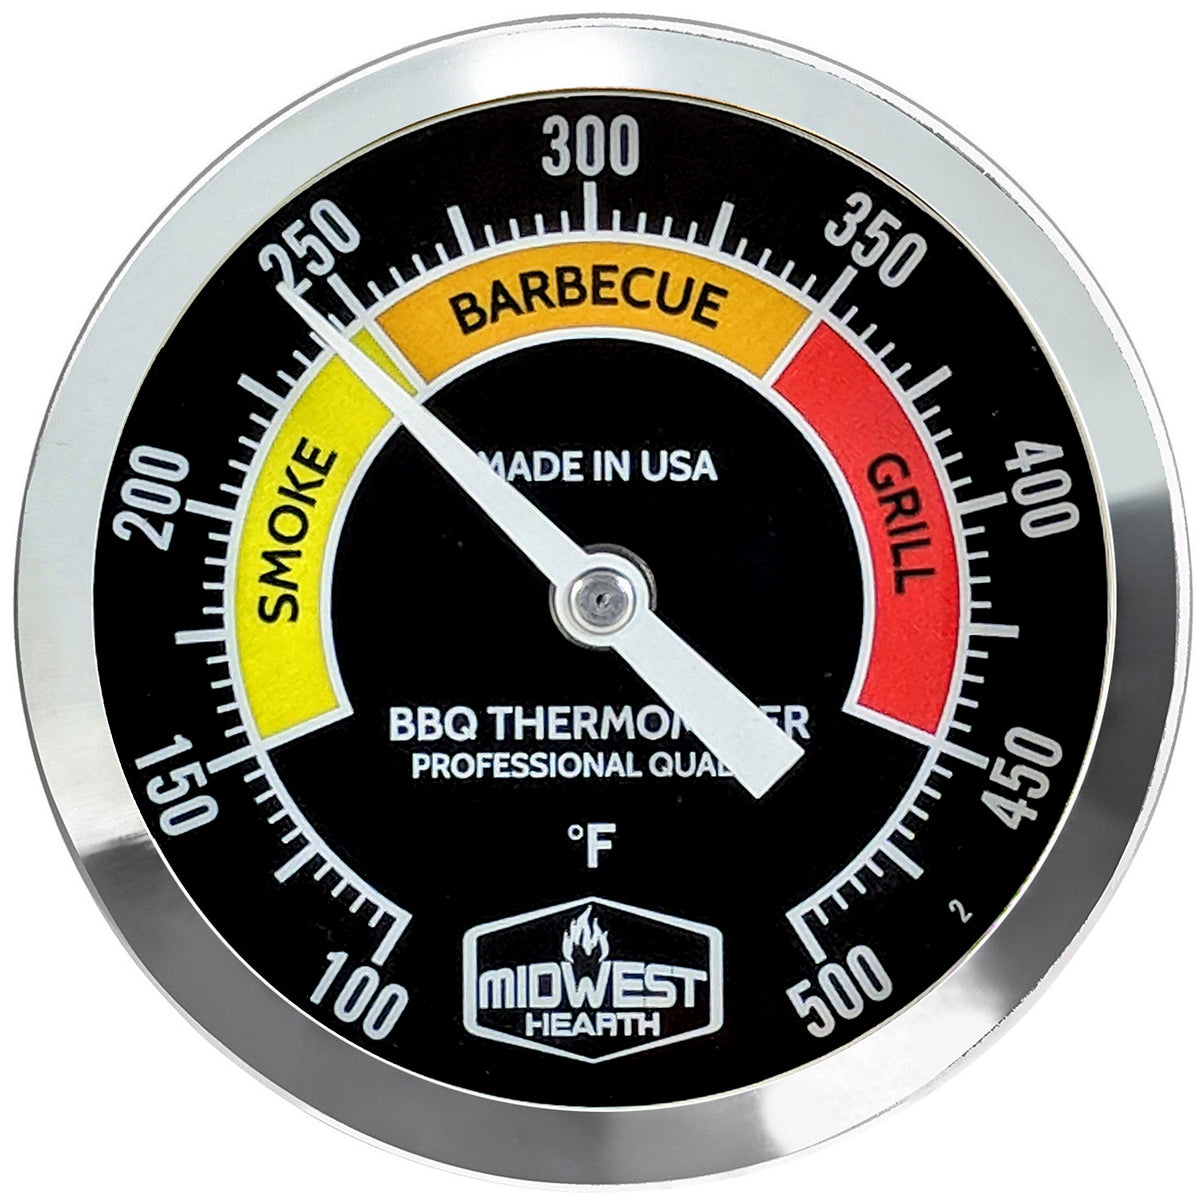 Instant Read Meat BBQ Thermometer – BBQ Bonanza